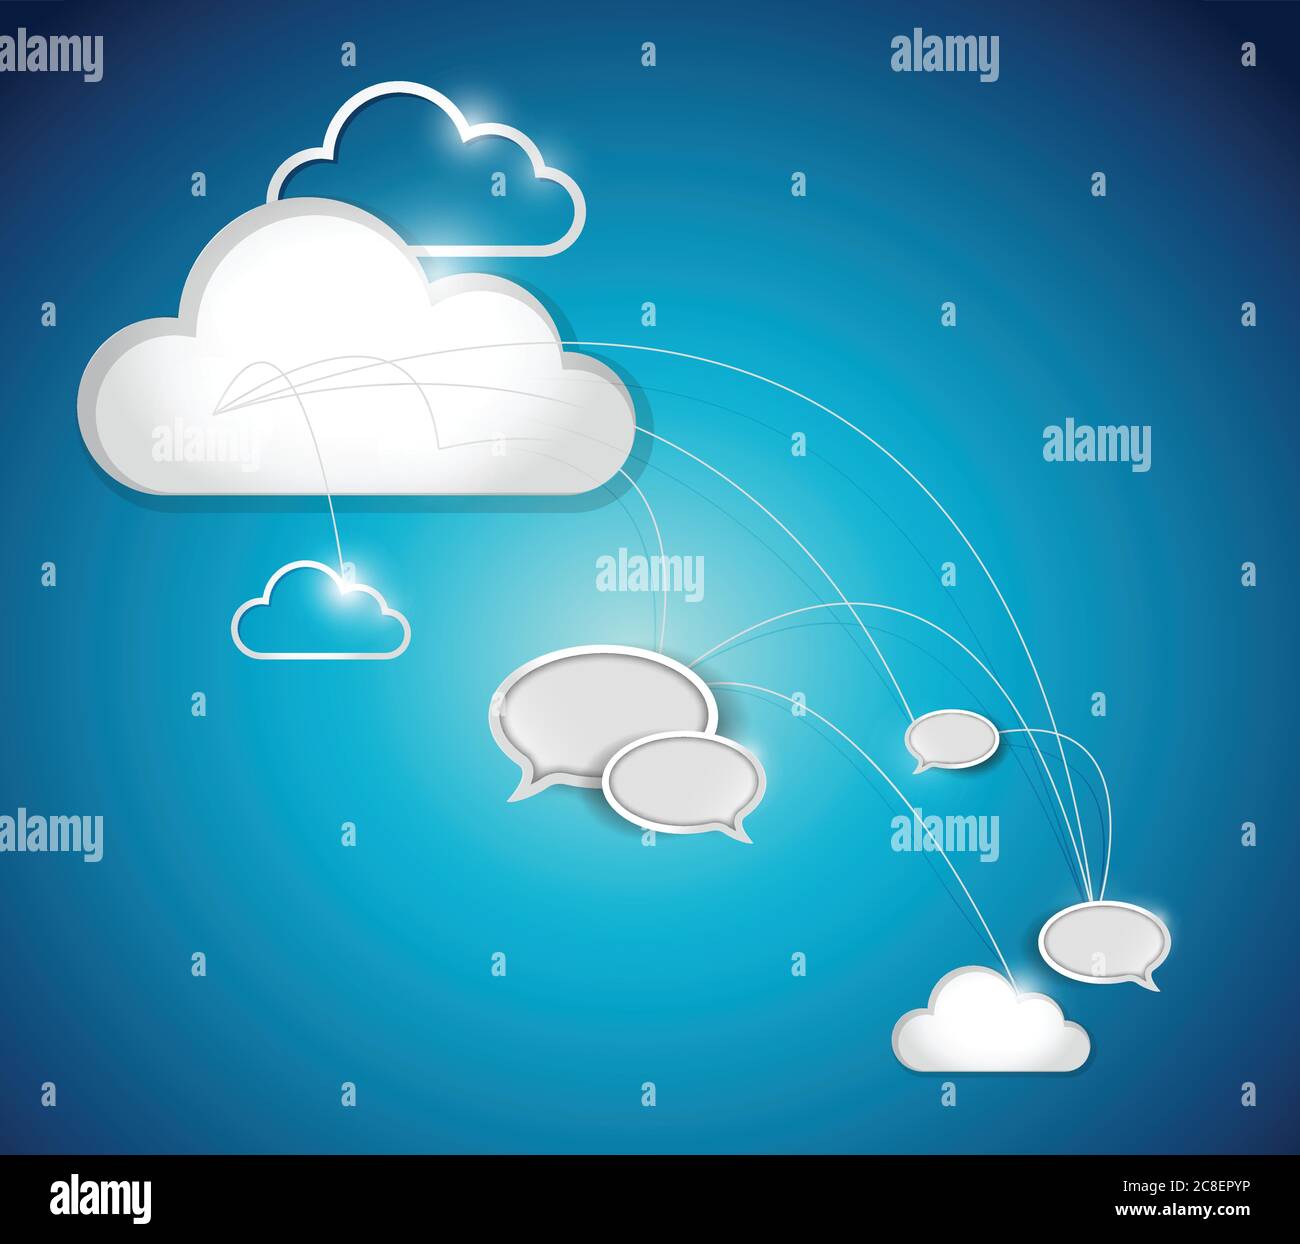 Design der Cloud-Computing-Kommunikationsnetzwerke auf weißem Hintergrund Stock Vektor